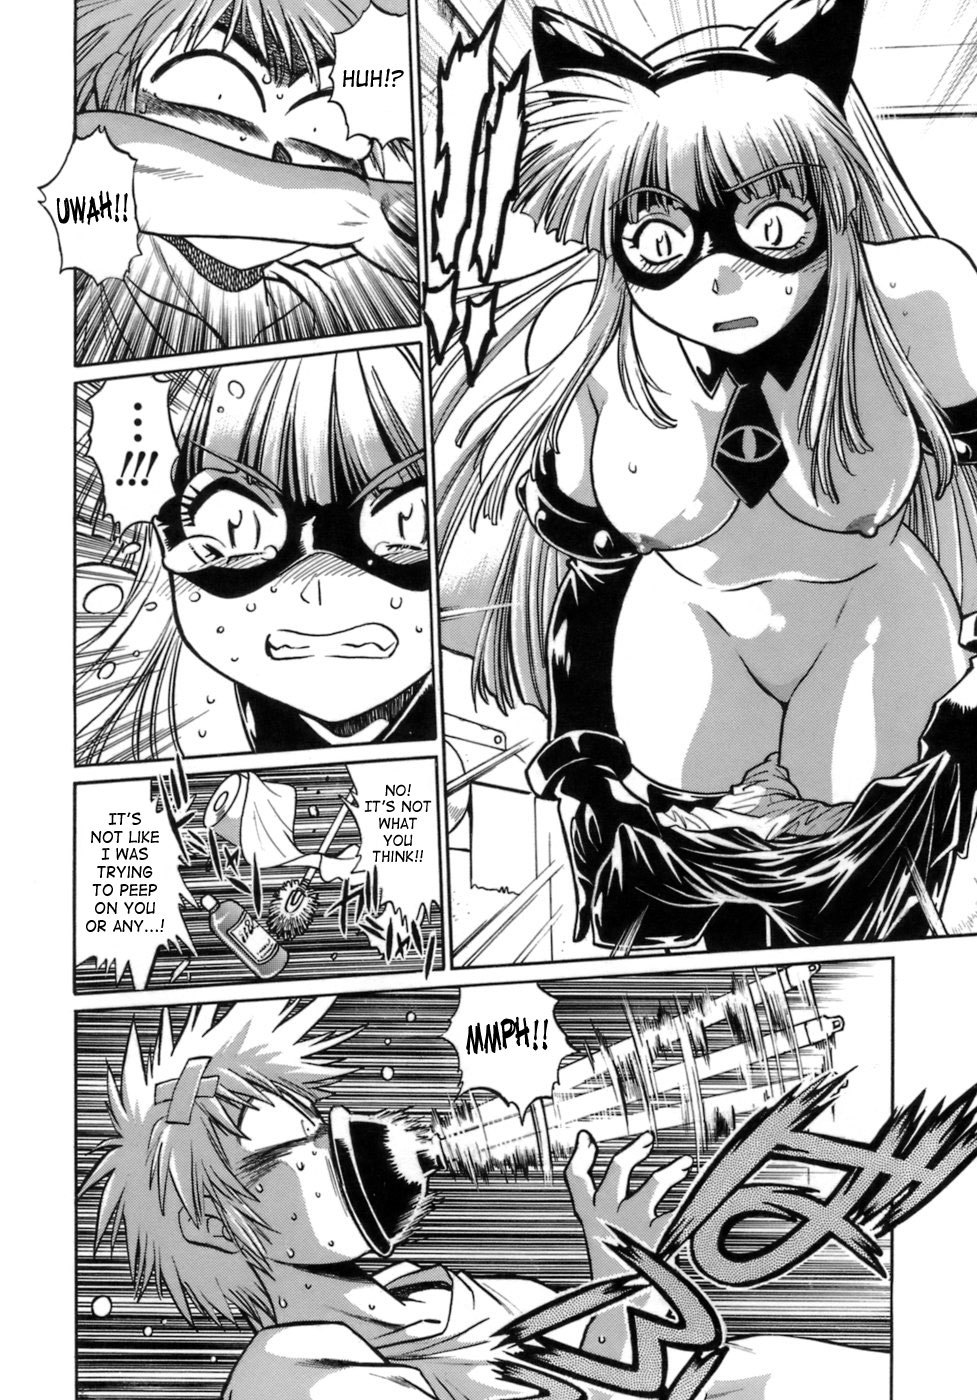 Tail Chaser Vol.1 8 hentai manga